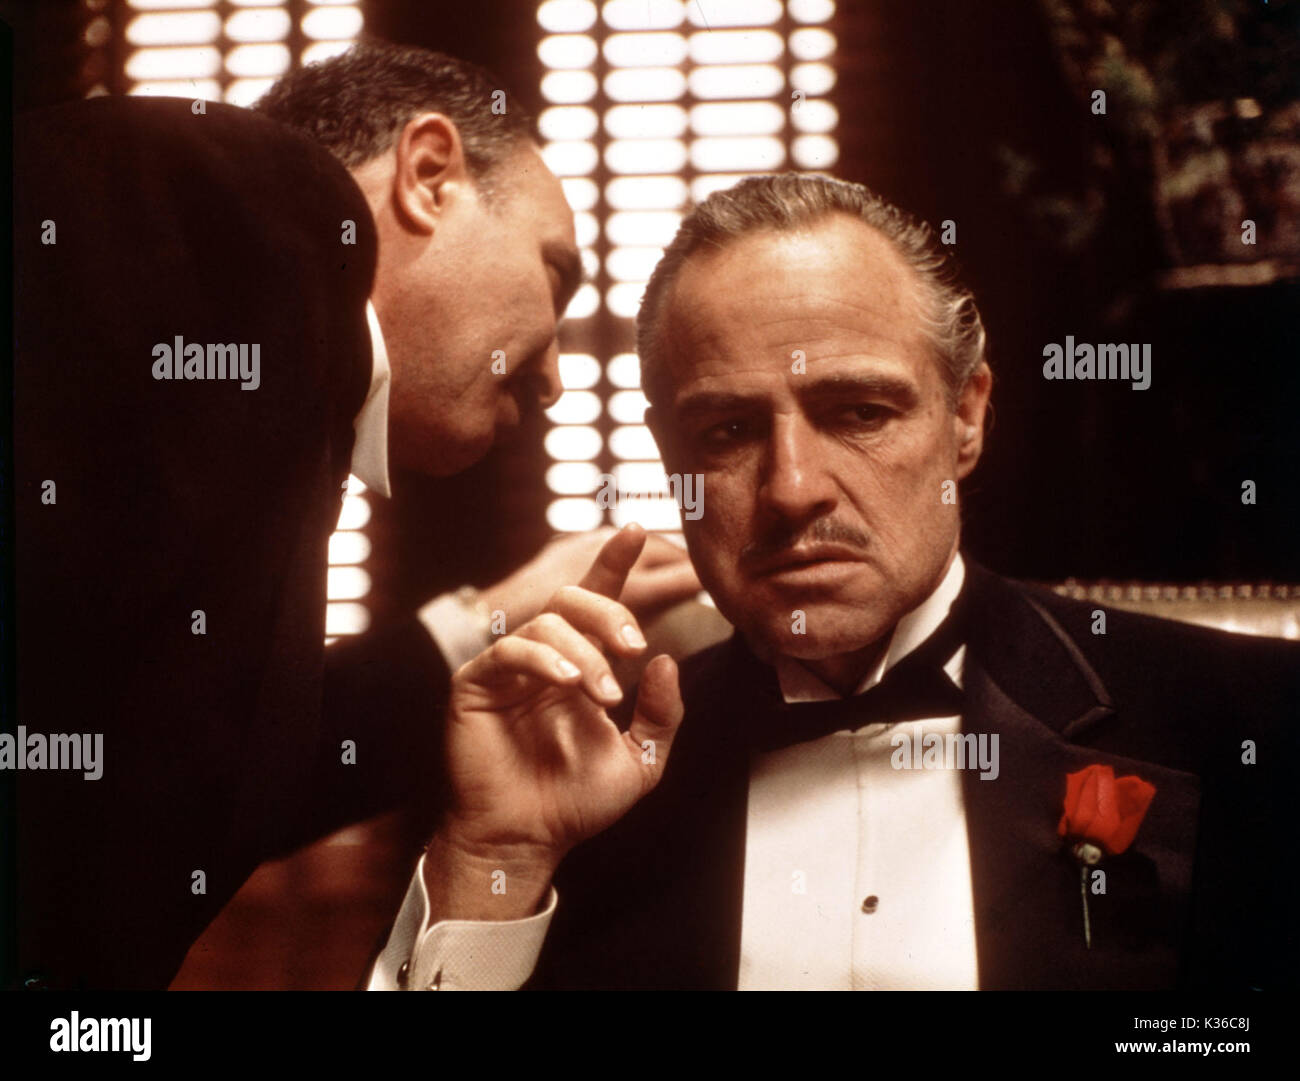 THE GODFATHER SALVATORE CORSITTO, MARLON BRANDO as Vito Corleone     Date: 1972 Stock Photo